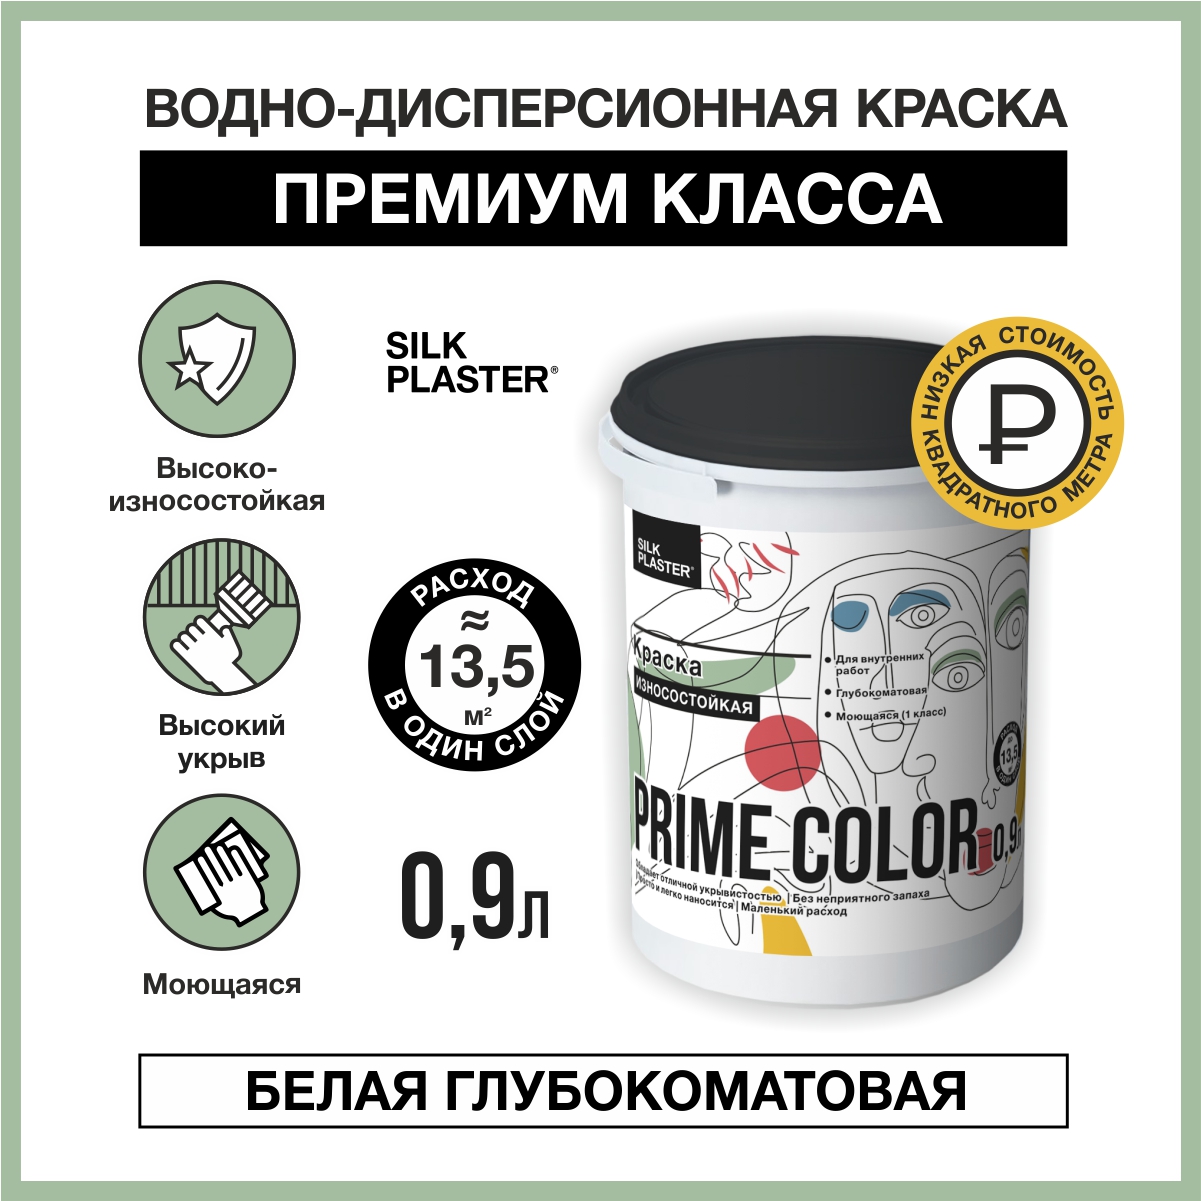 Водно-дисперсионной краска SILK PLASTER PRIME COLOR износостойкая 0.9 л.